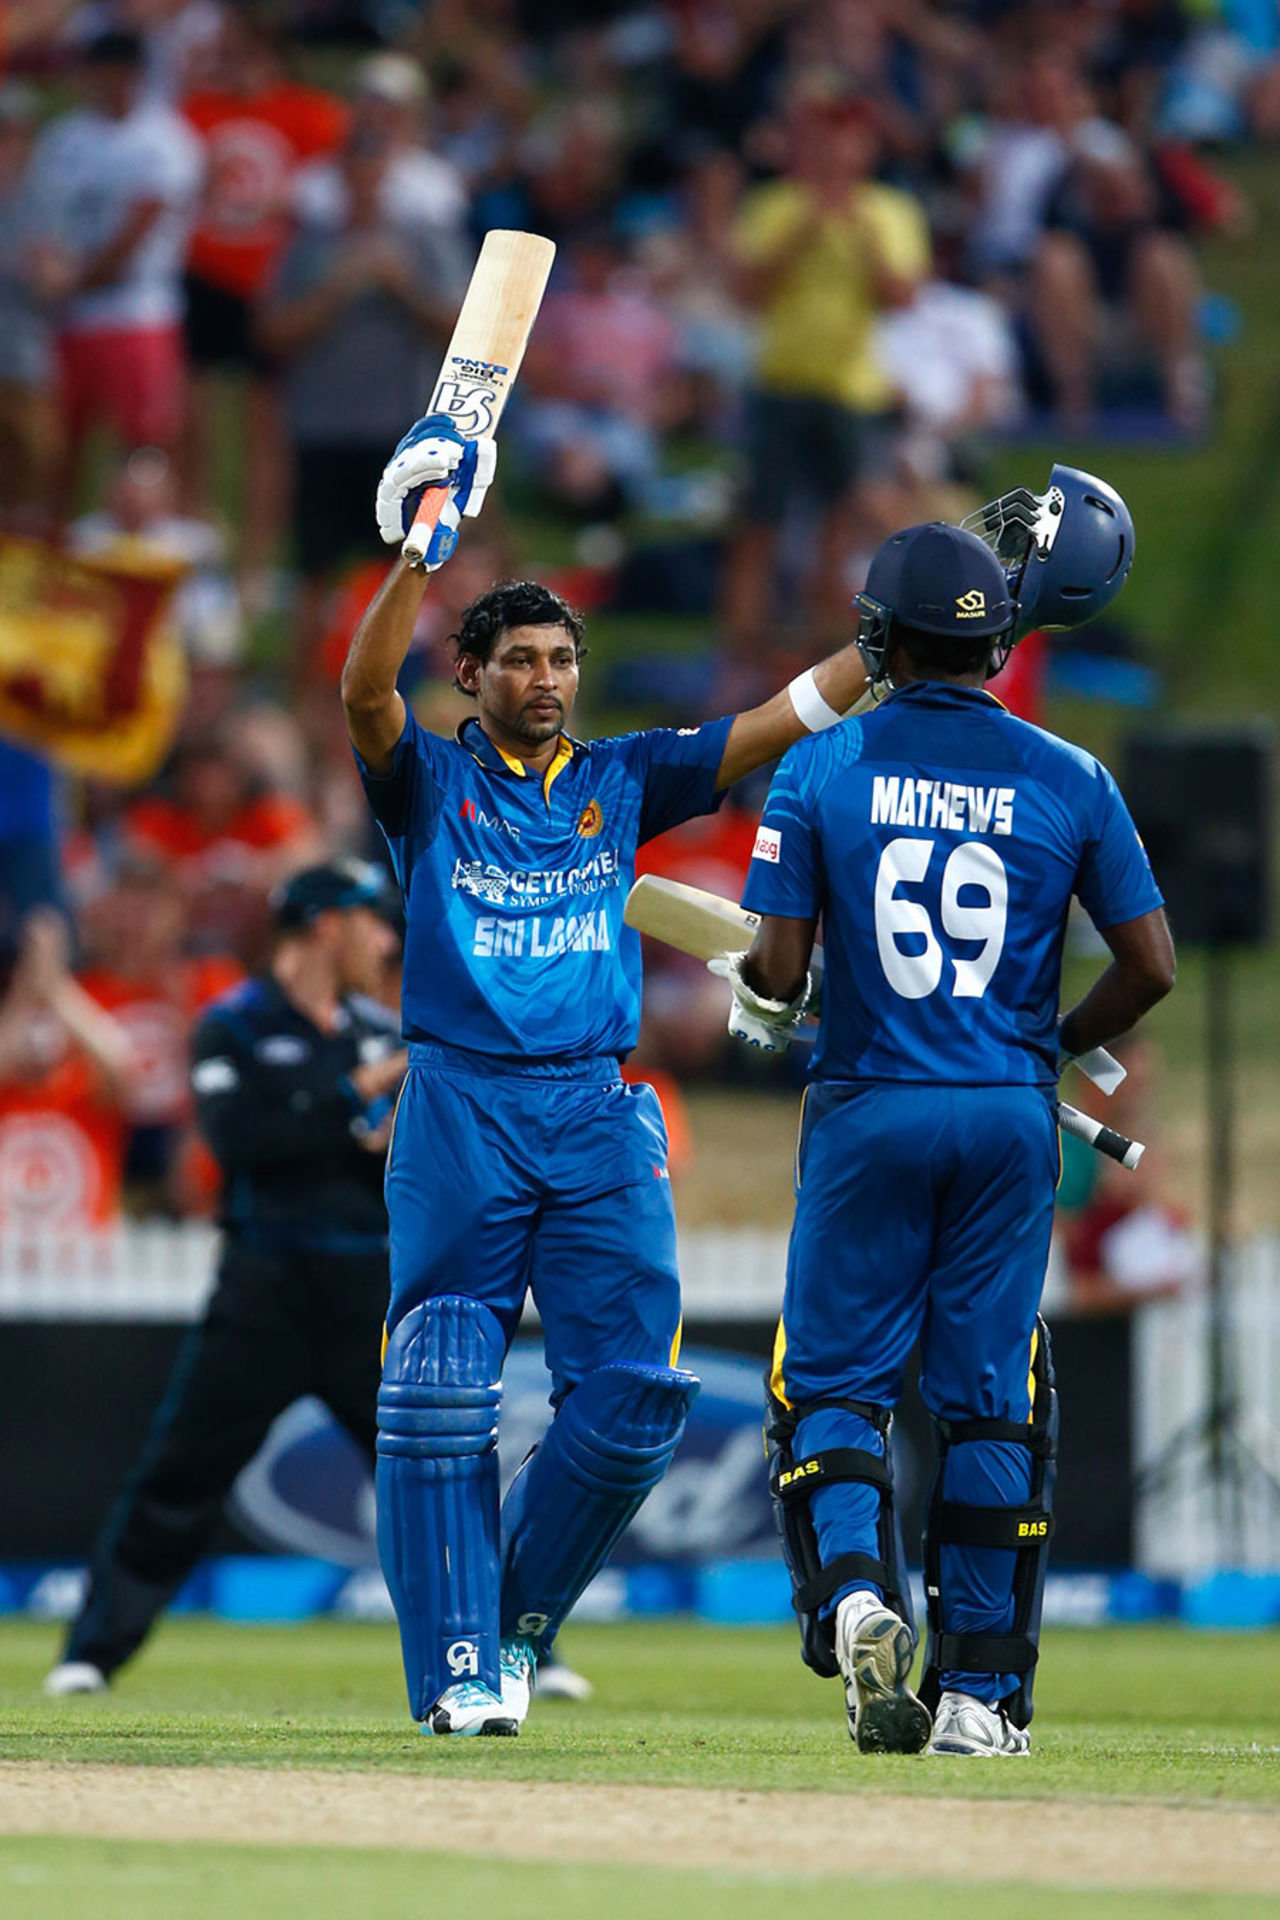 Tillakaratne Dilshan made his 19th ODI century, New Zealand v Sri Lanka, 2nd ODI, Hamilton, January 15, 2015